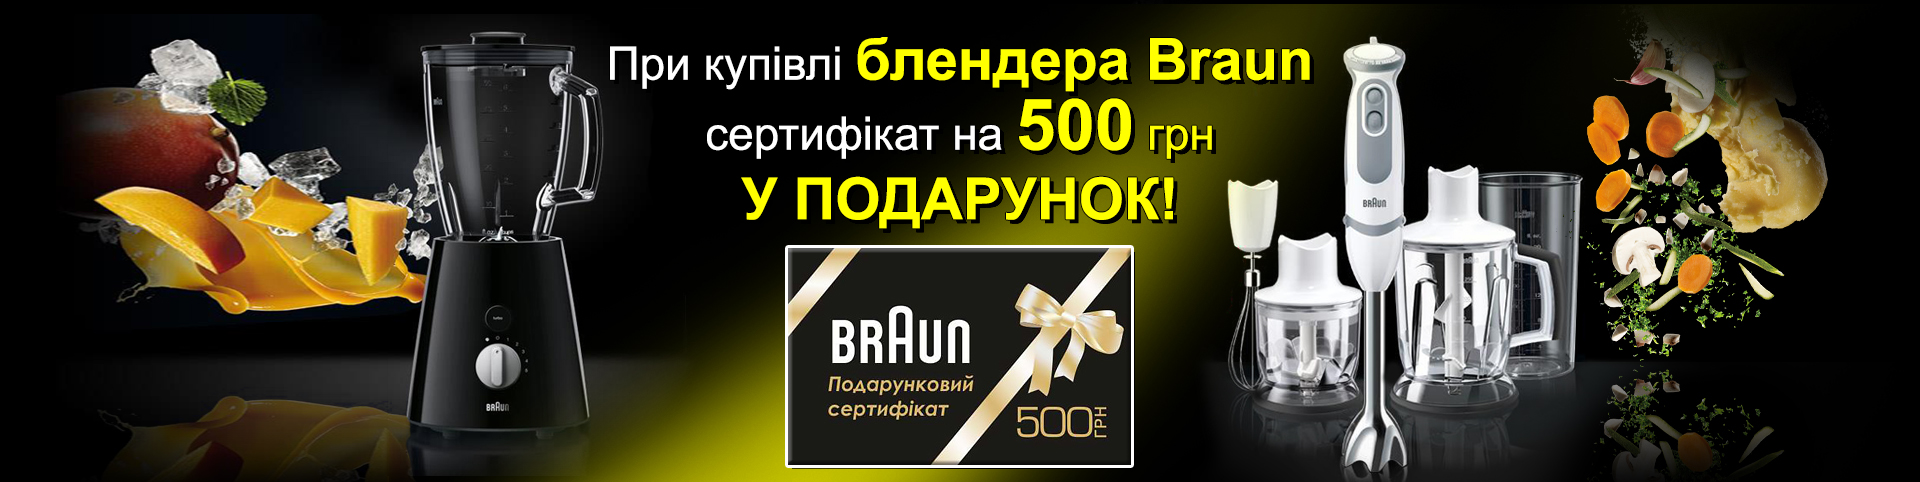 Купуючи блендер Braun, в подарунок ви отримуєте сертифікат на 500 гривень